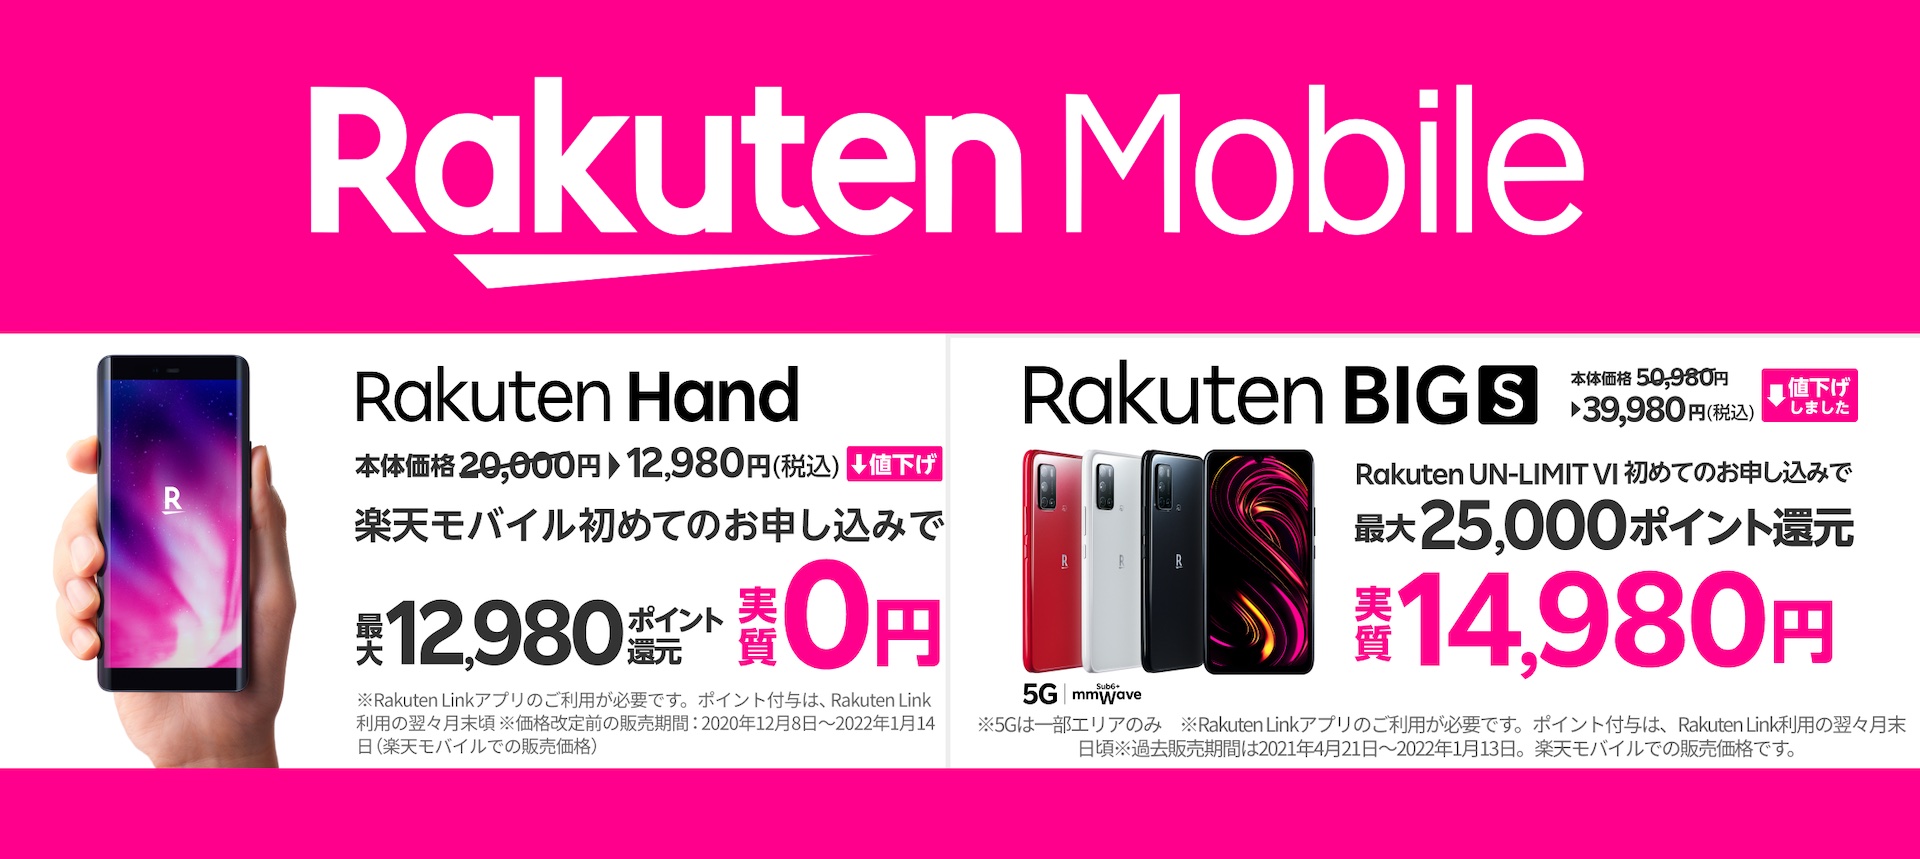 楽天モバイルがRakuten Handを1万2980円、Rakuten BIG sを3万9980円に単体購入を含めて値下げ！回線契約とセットで実質0円から  - S-MAX